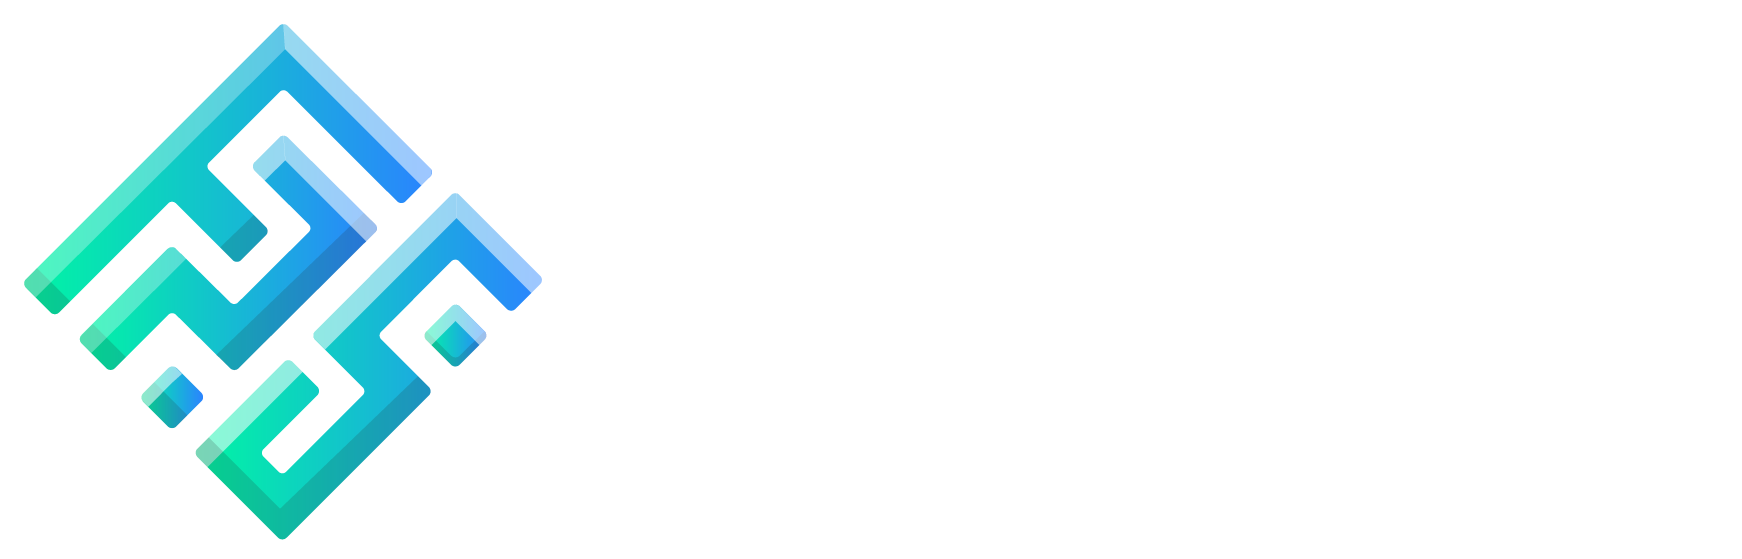 fps_footer_logo